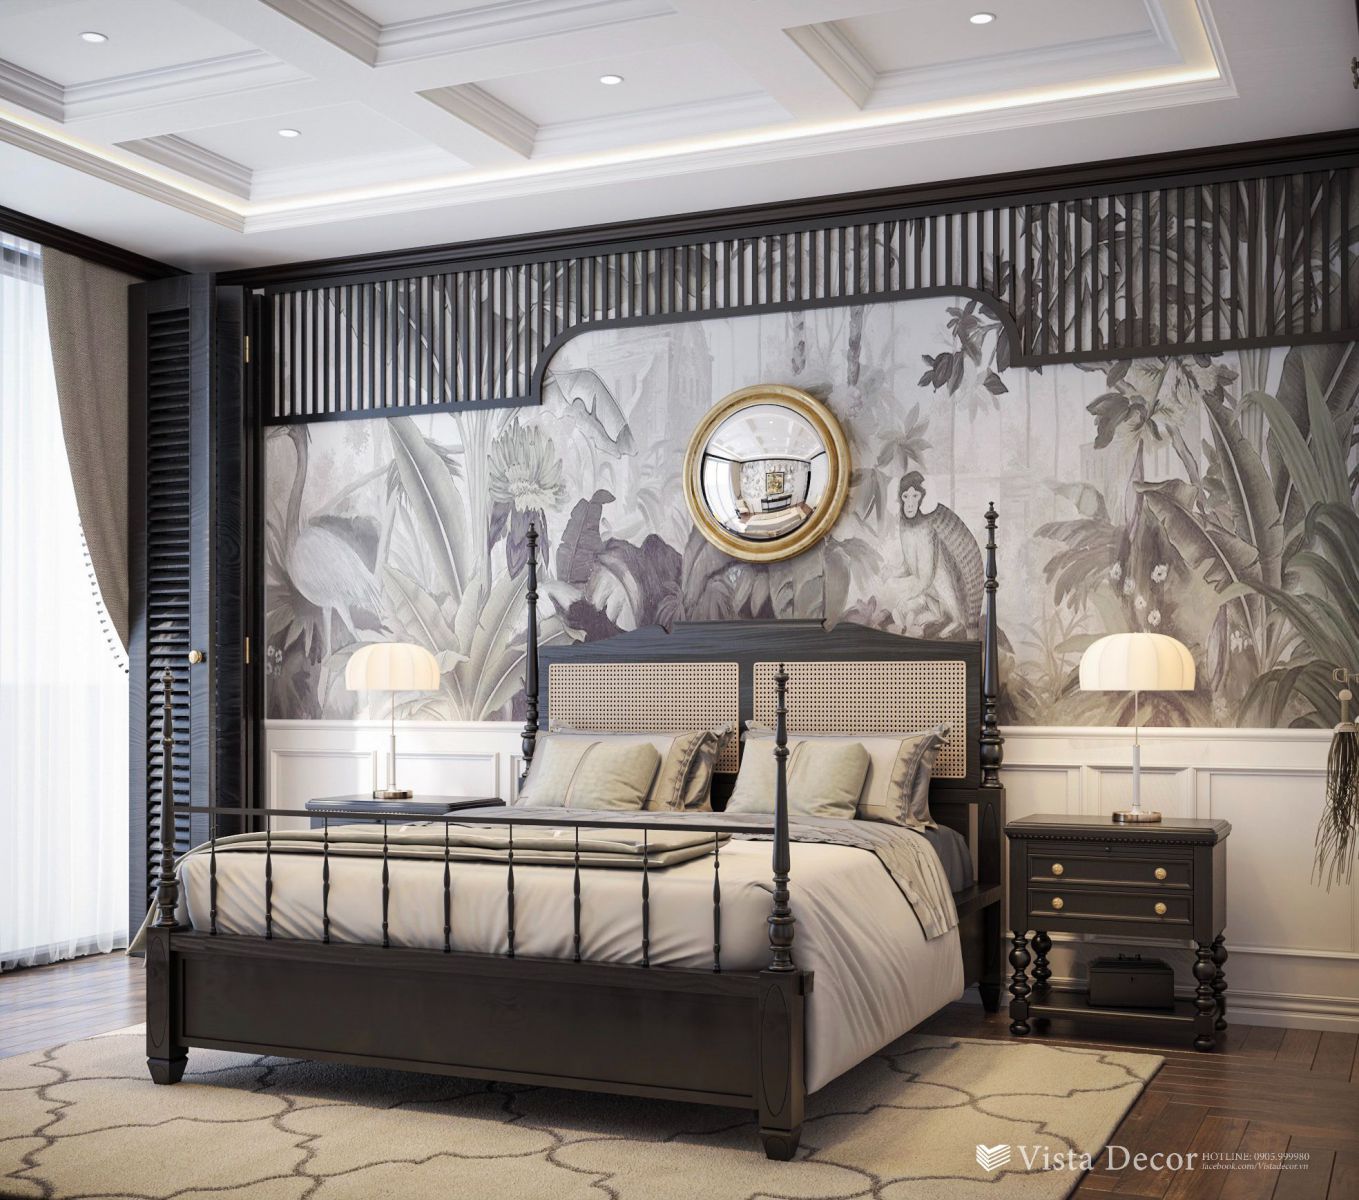 Thiết kế phòng ngủ căn hộ 2PN diện tích 110 - dự án Aria Vũng Tàu